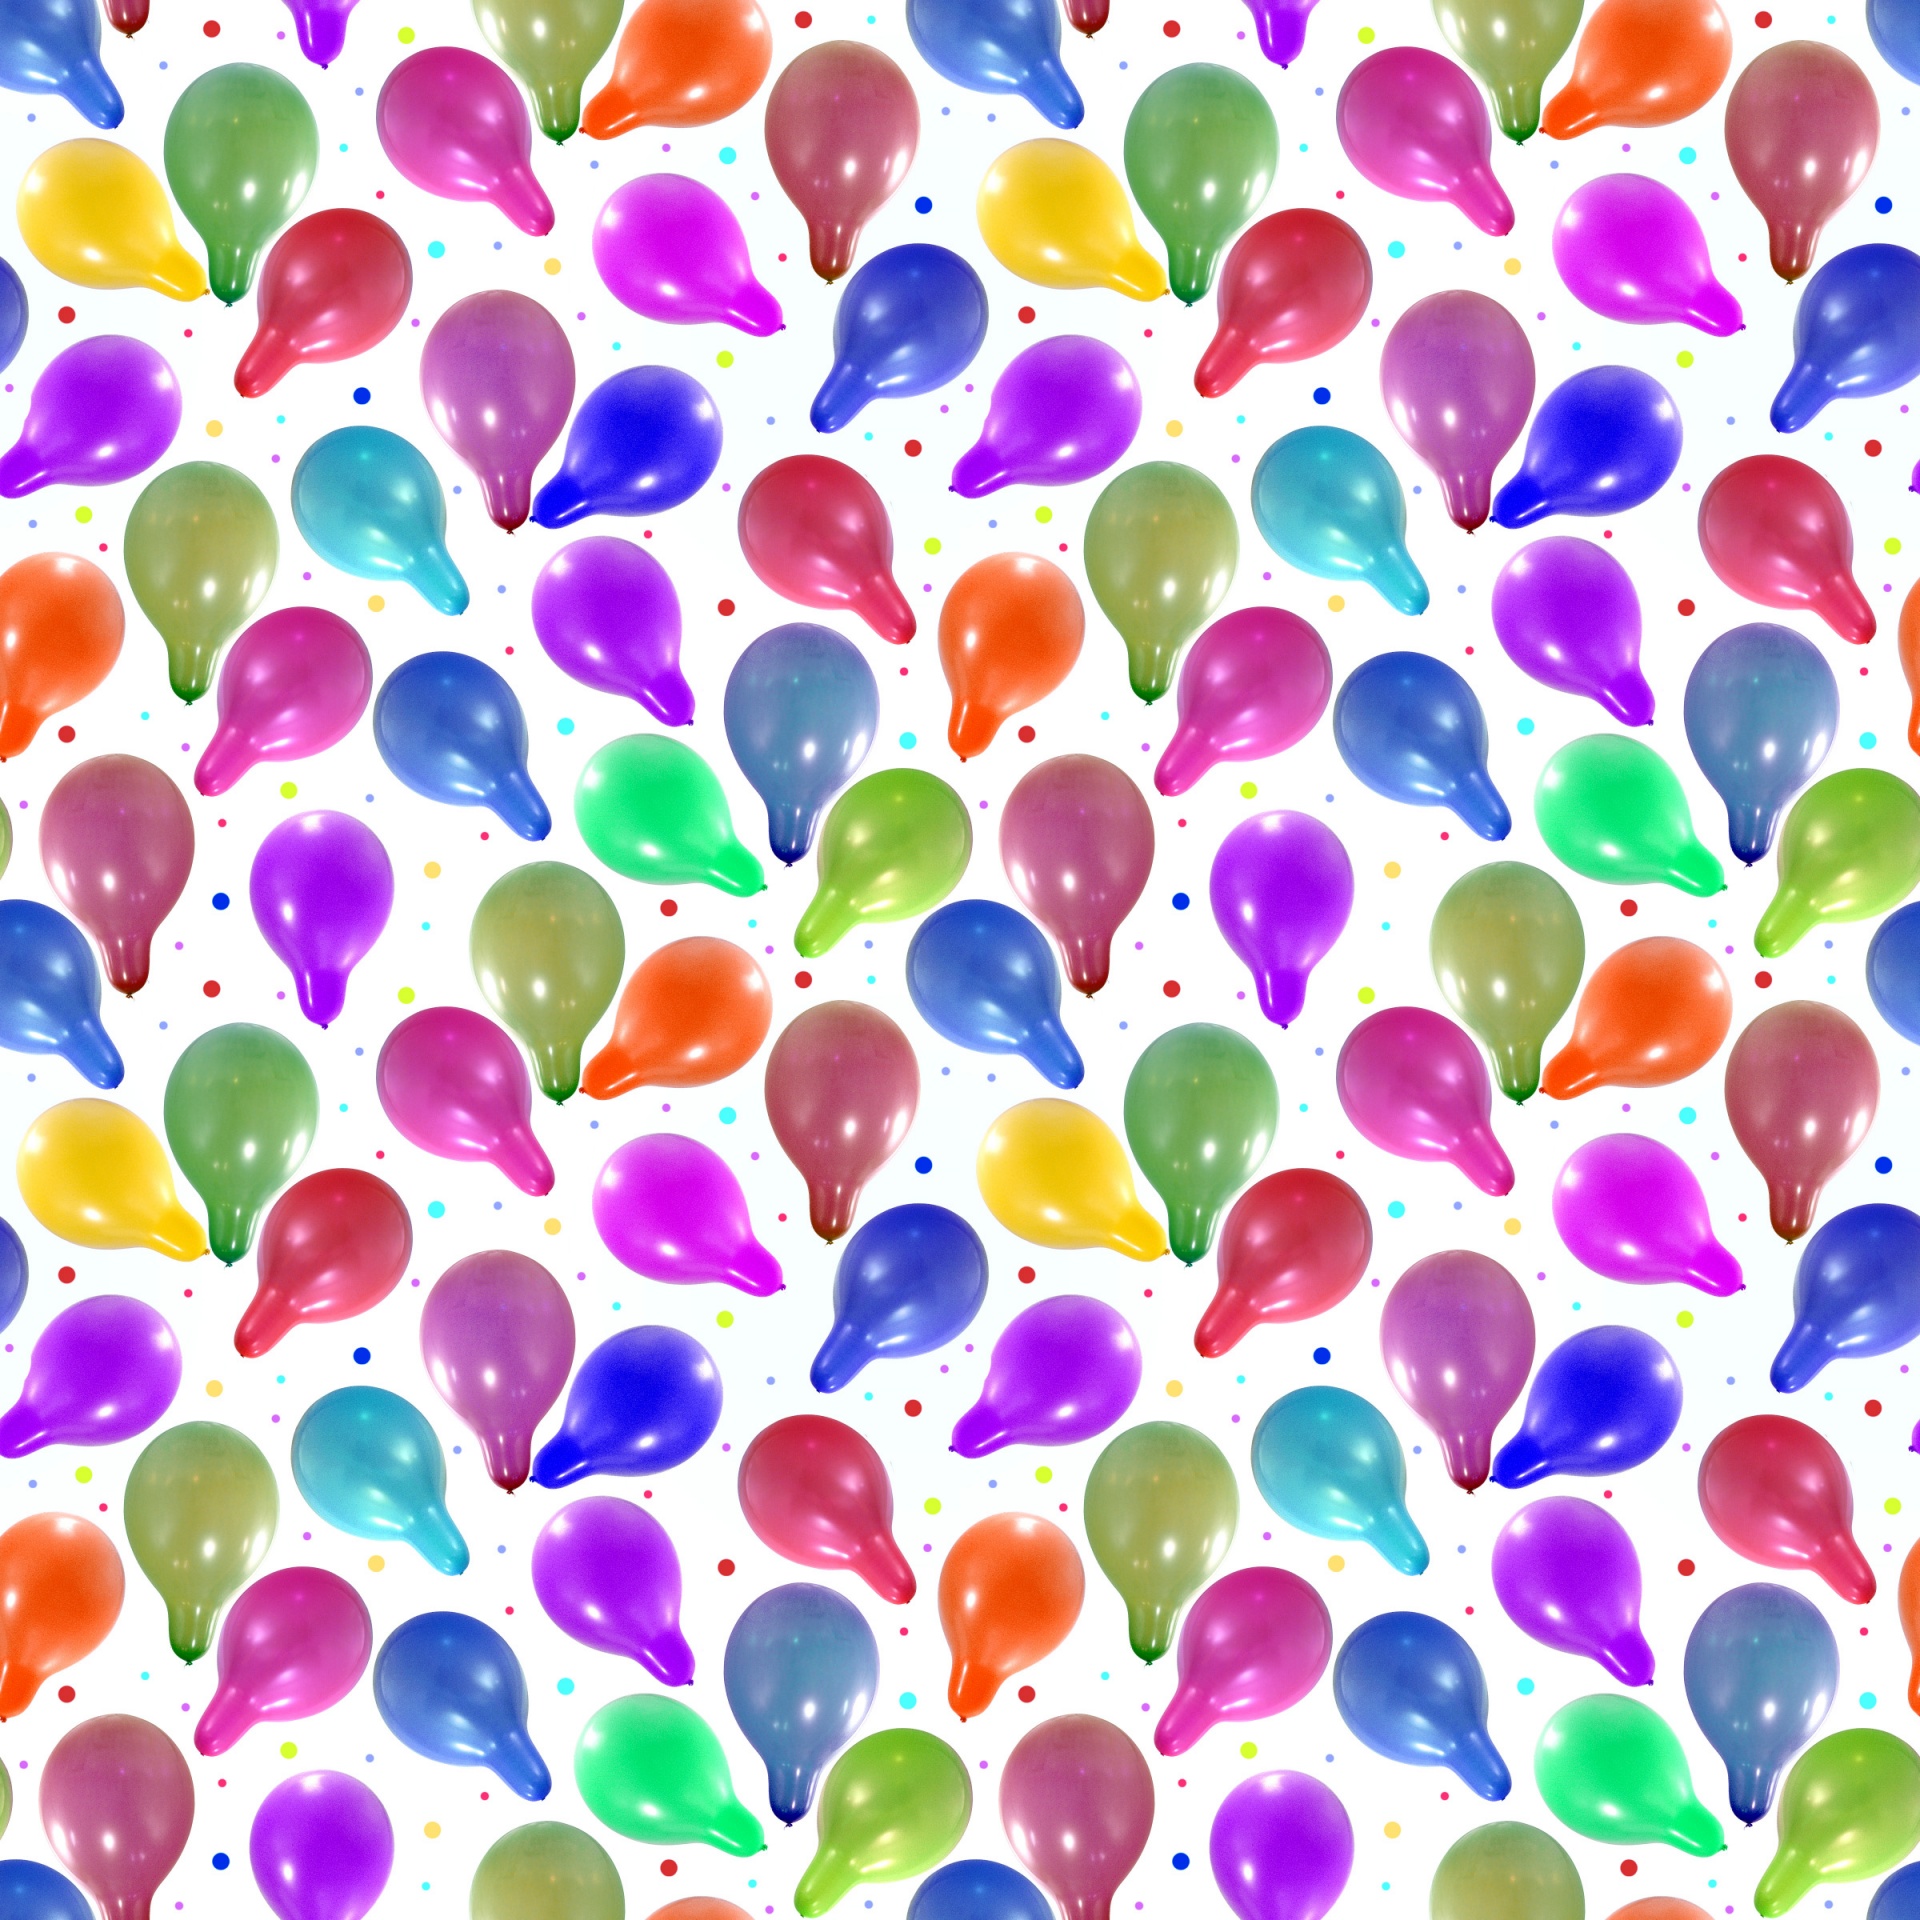 Текстура шаров. Фон шарики воздушные. Фон с воздушными шарами. Бесшовный фон воздушные шары. Воздушные шары текстура.